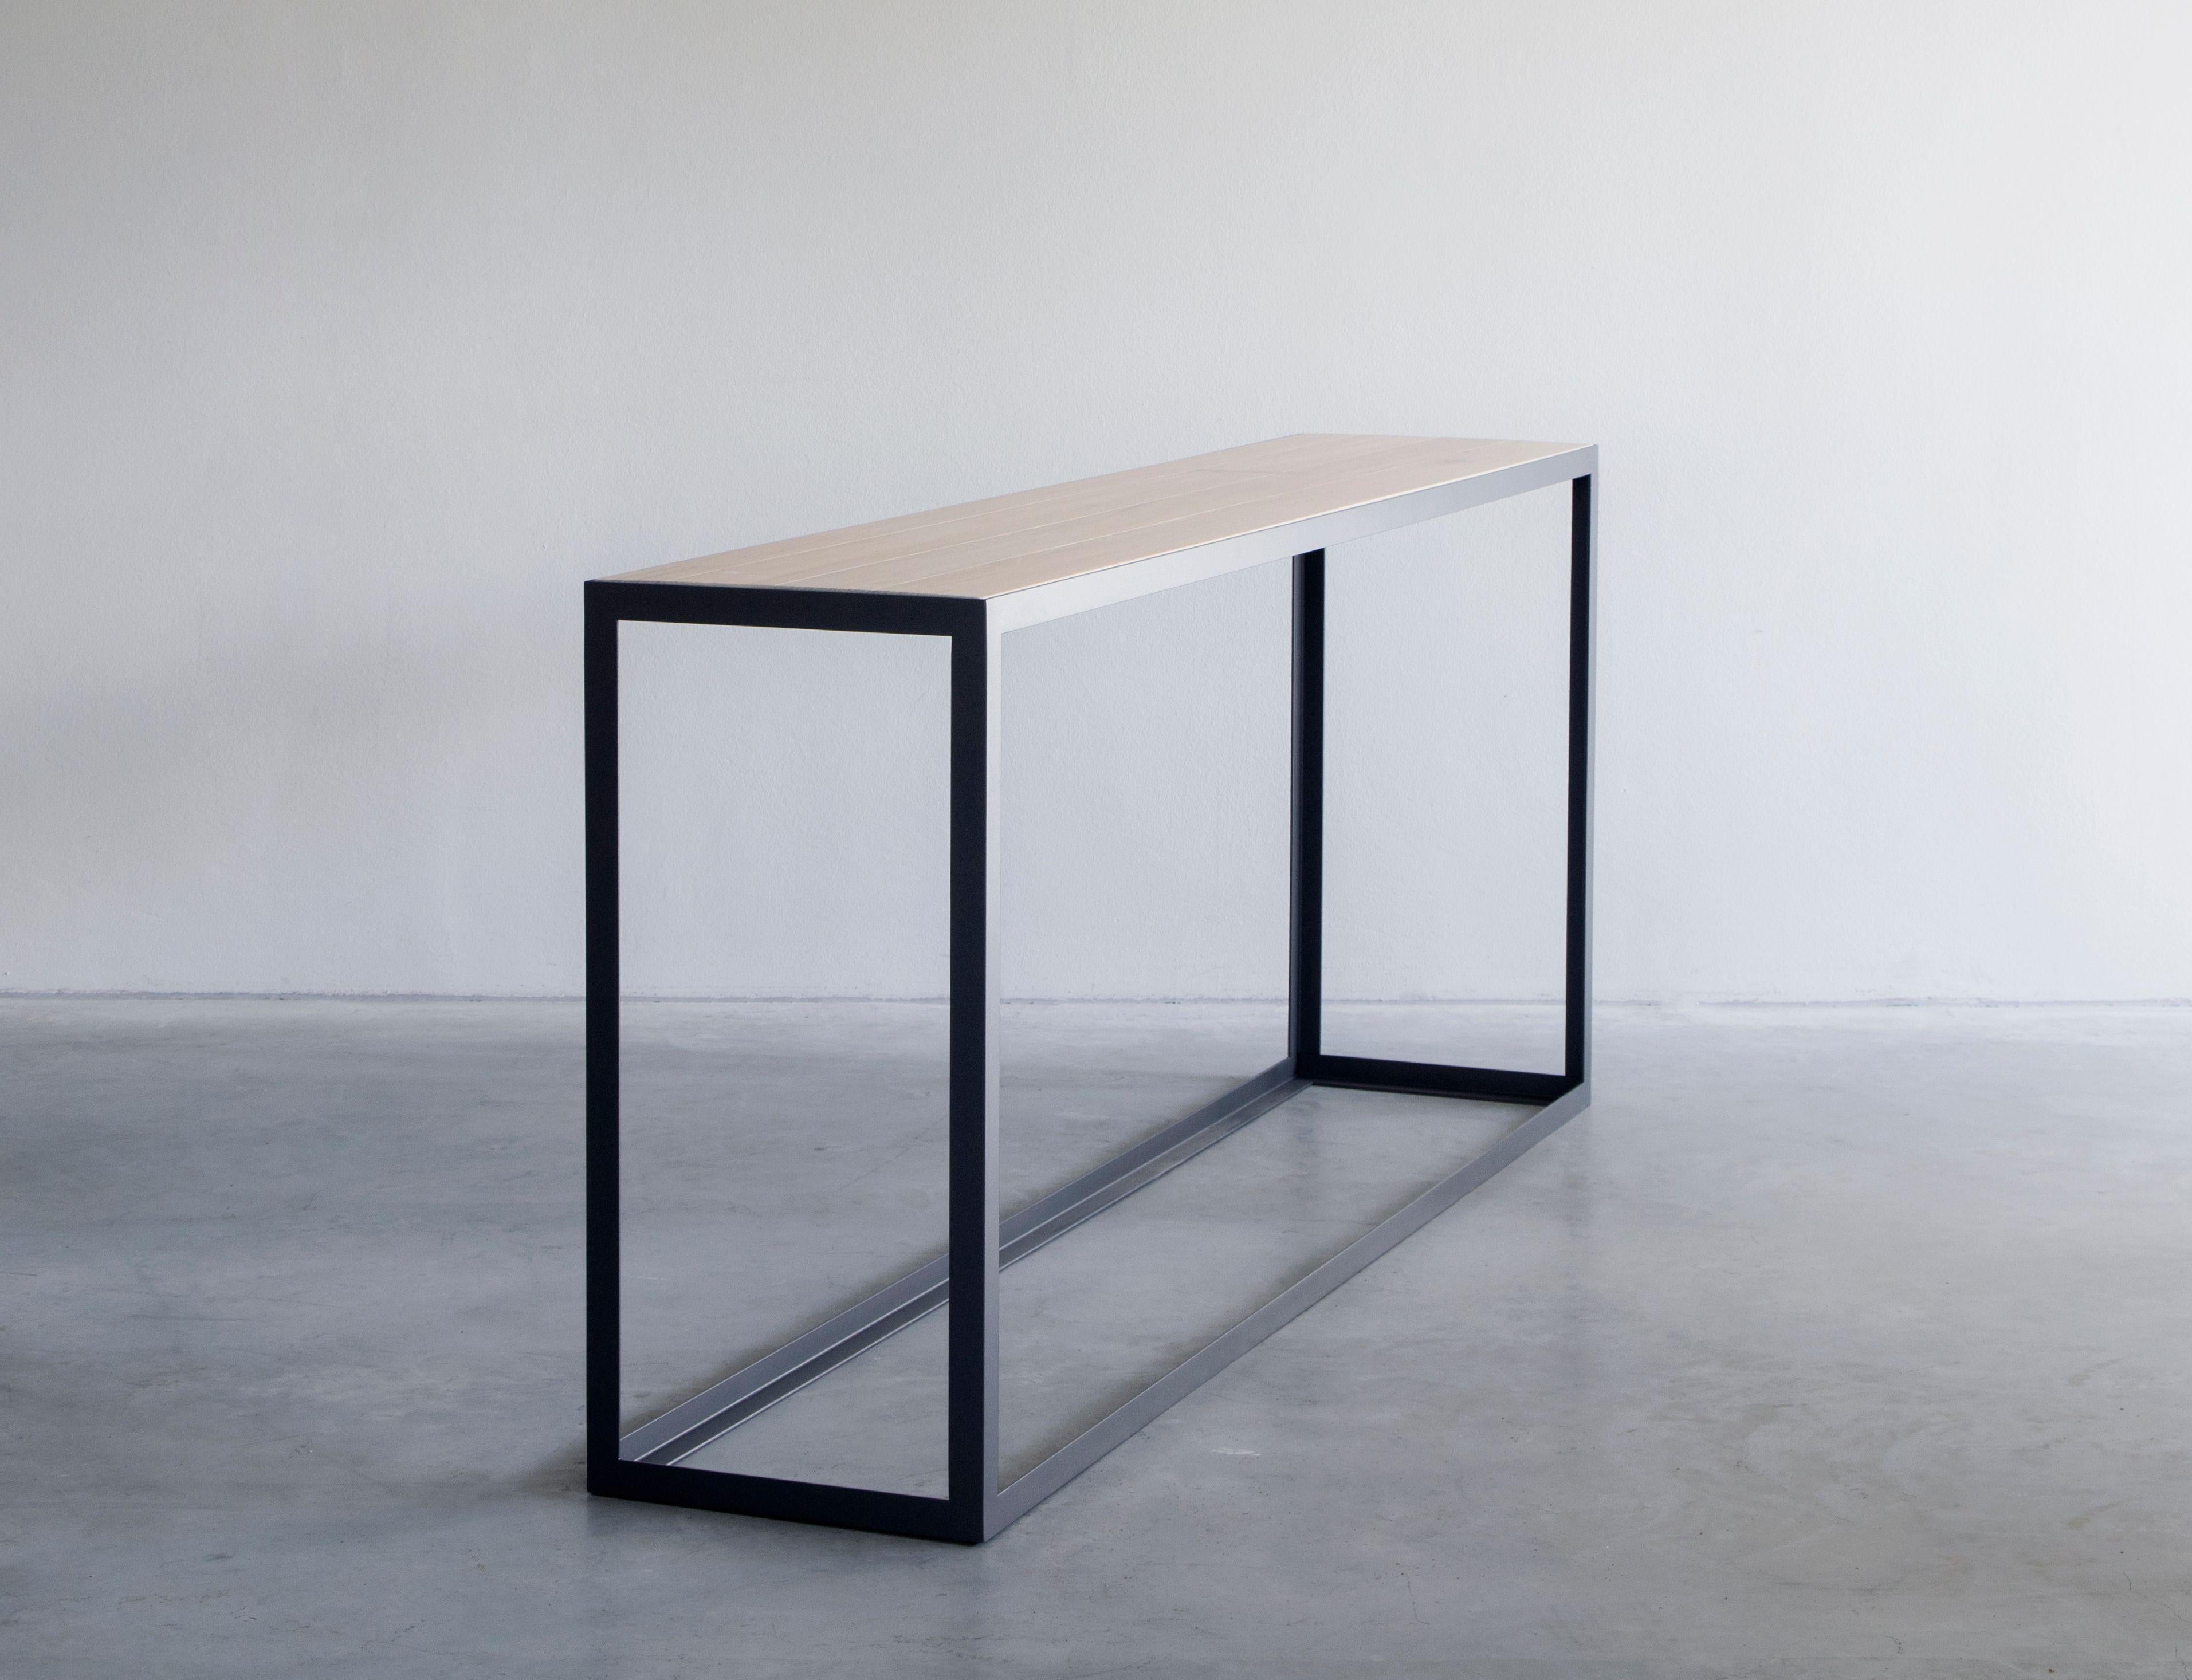 Table console One par Van Rossum
Dimensions : D200 x L40 x H60 cm
MATERIAL : Chêne, acier.

Le bois est disponible dans toutes les couleurs standard de Van Rossum, ou dans une finition assortie à l'échantillon du client.
L'acier est disponible en